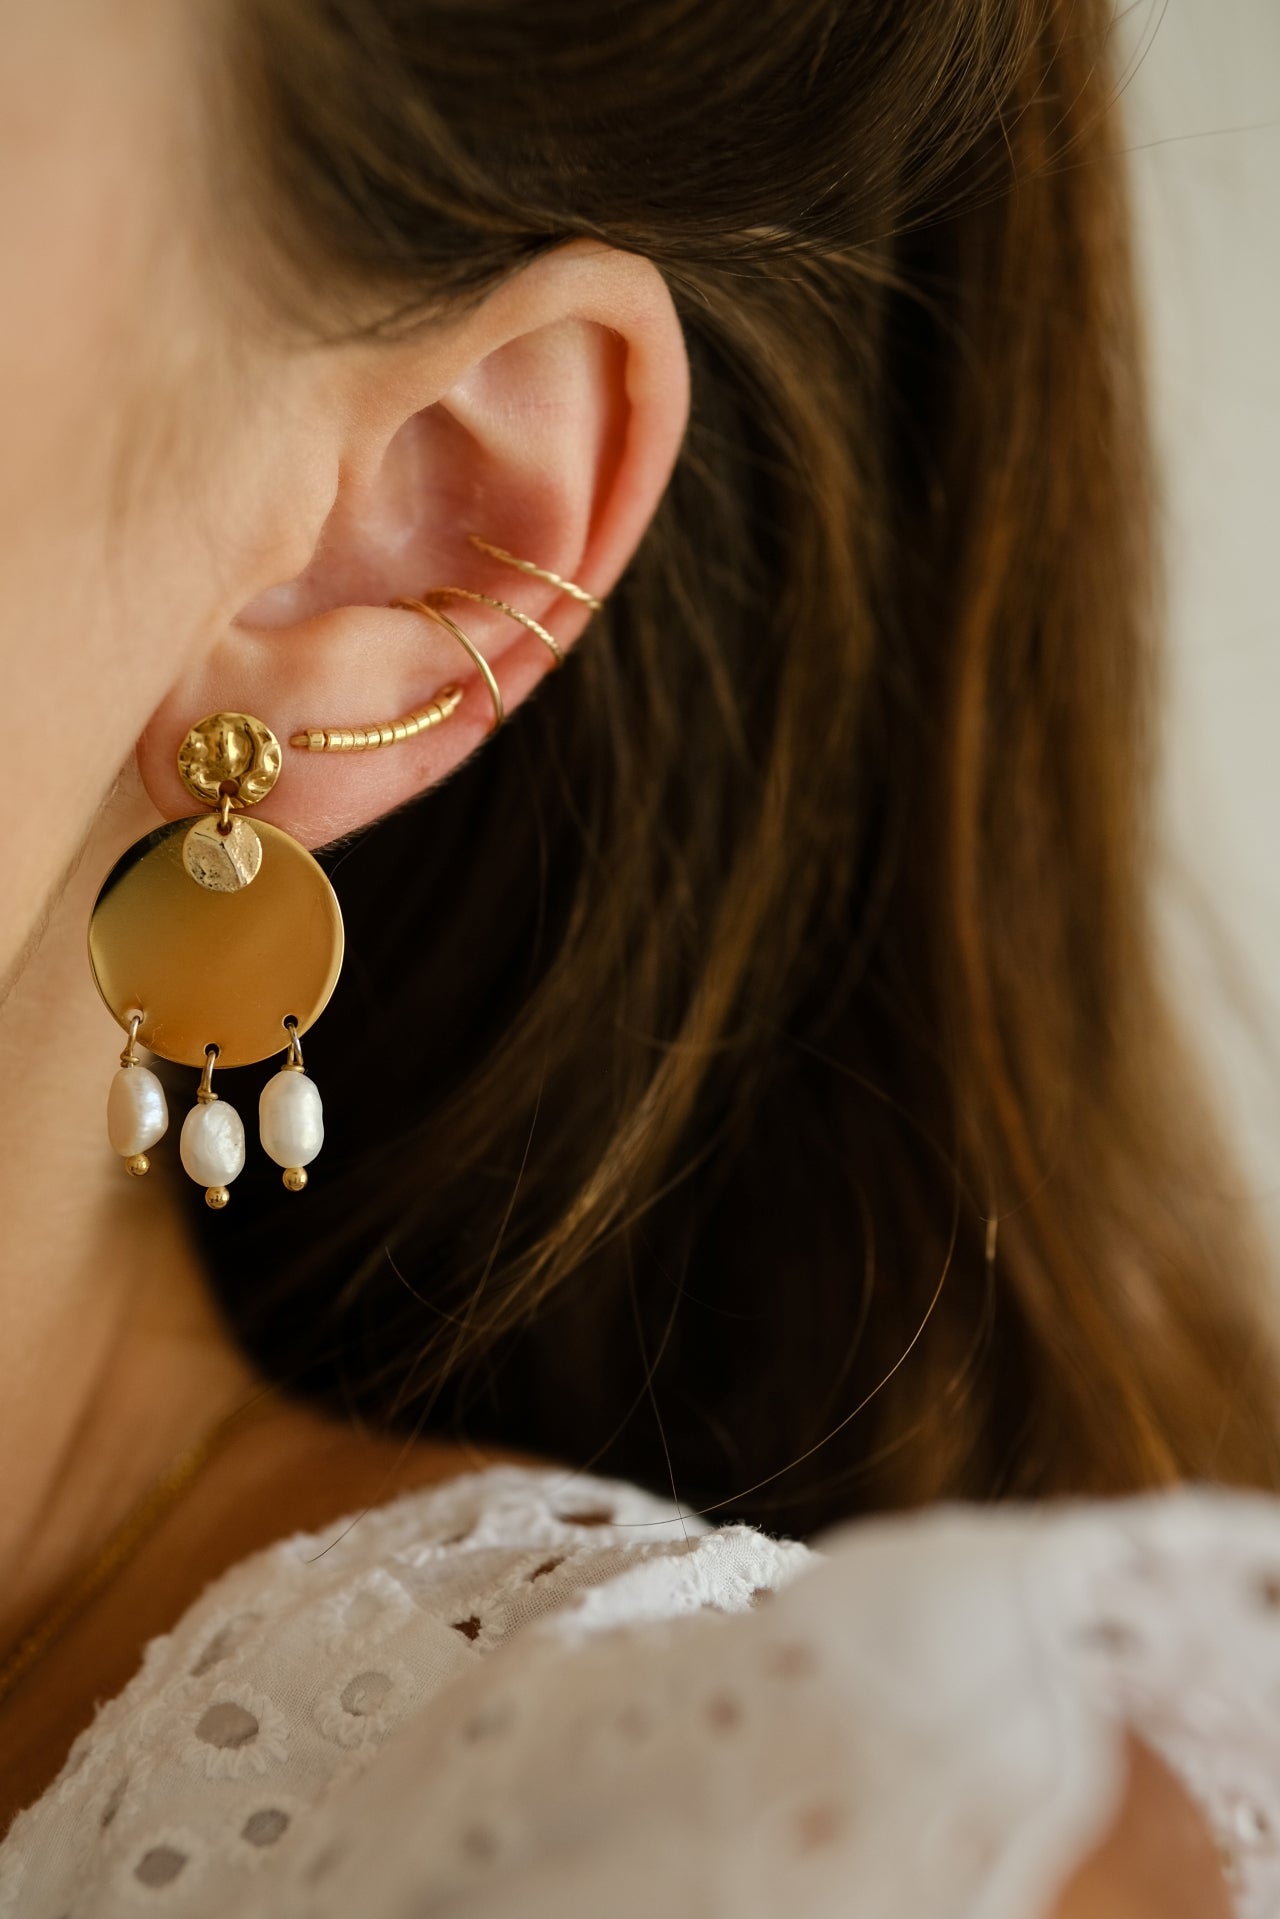 “Peace” earrings